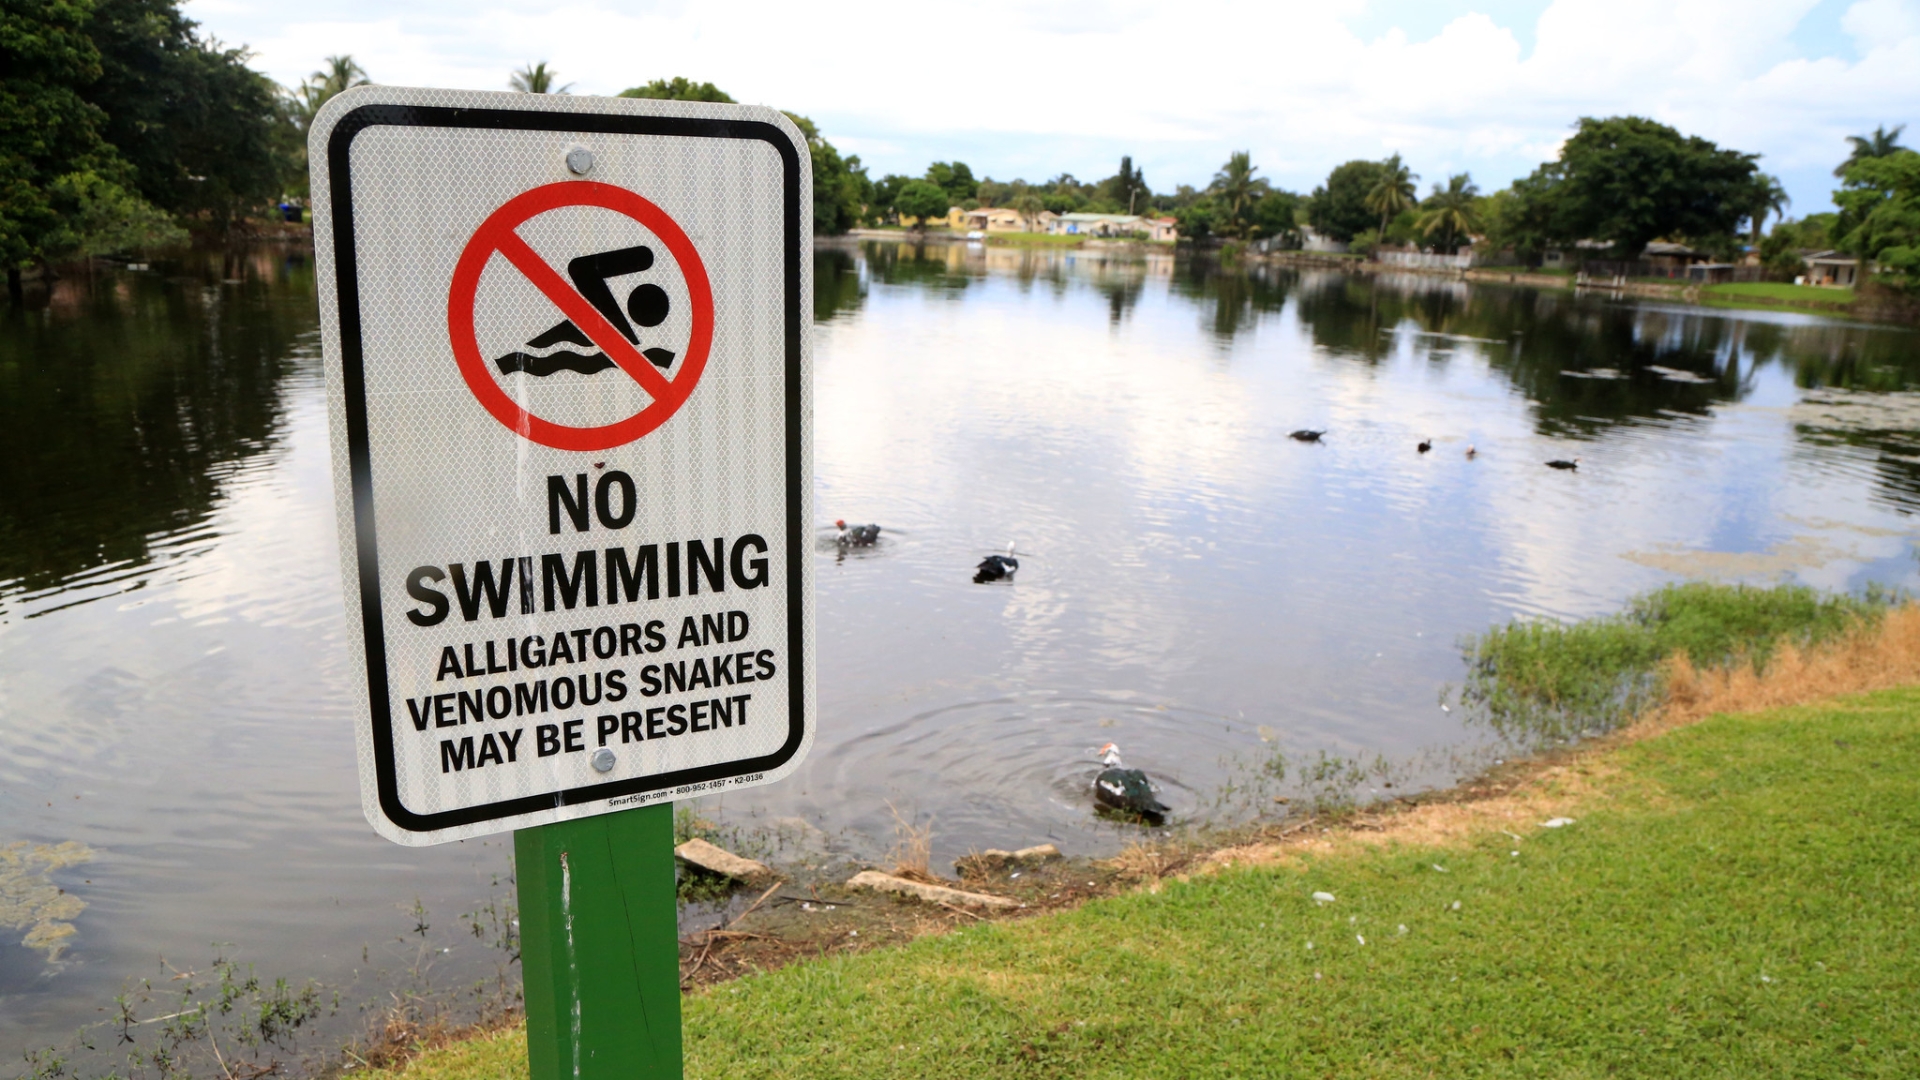 Danger unfenced pond no unaccompanied children sign 